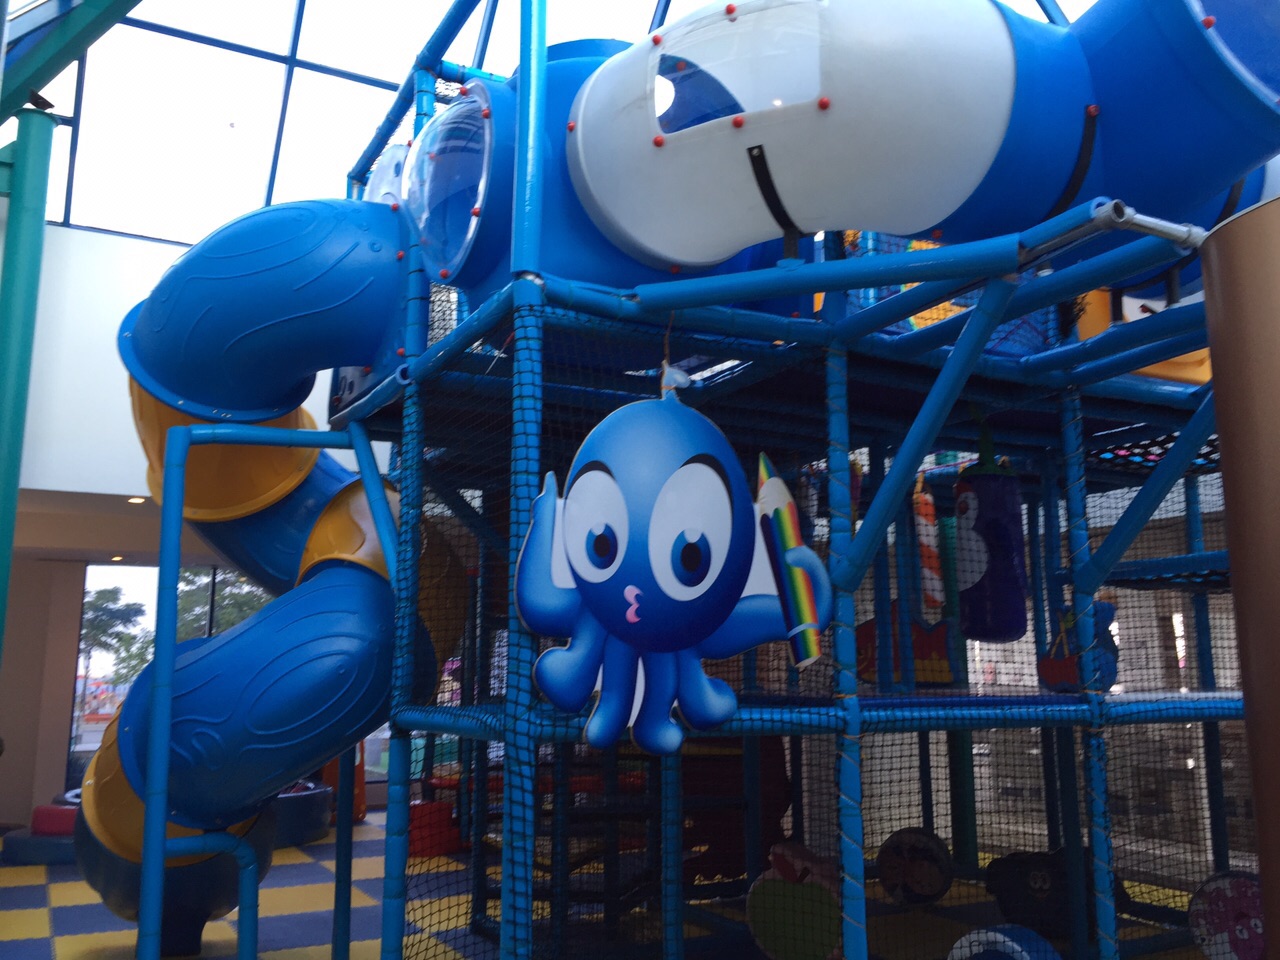 Синяя акула тематическая детская мягкая игровая площадка